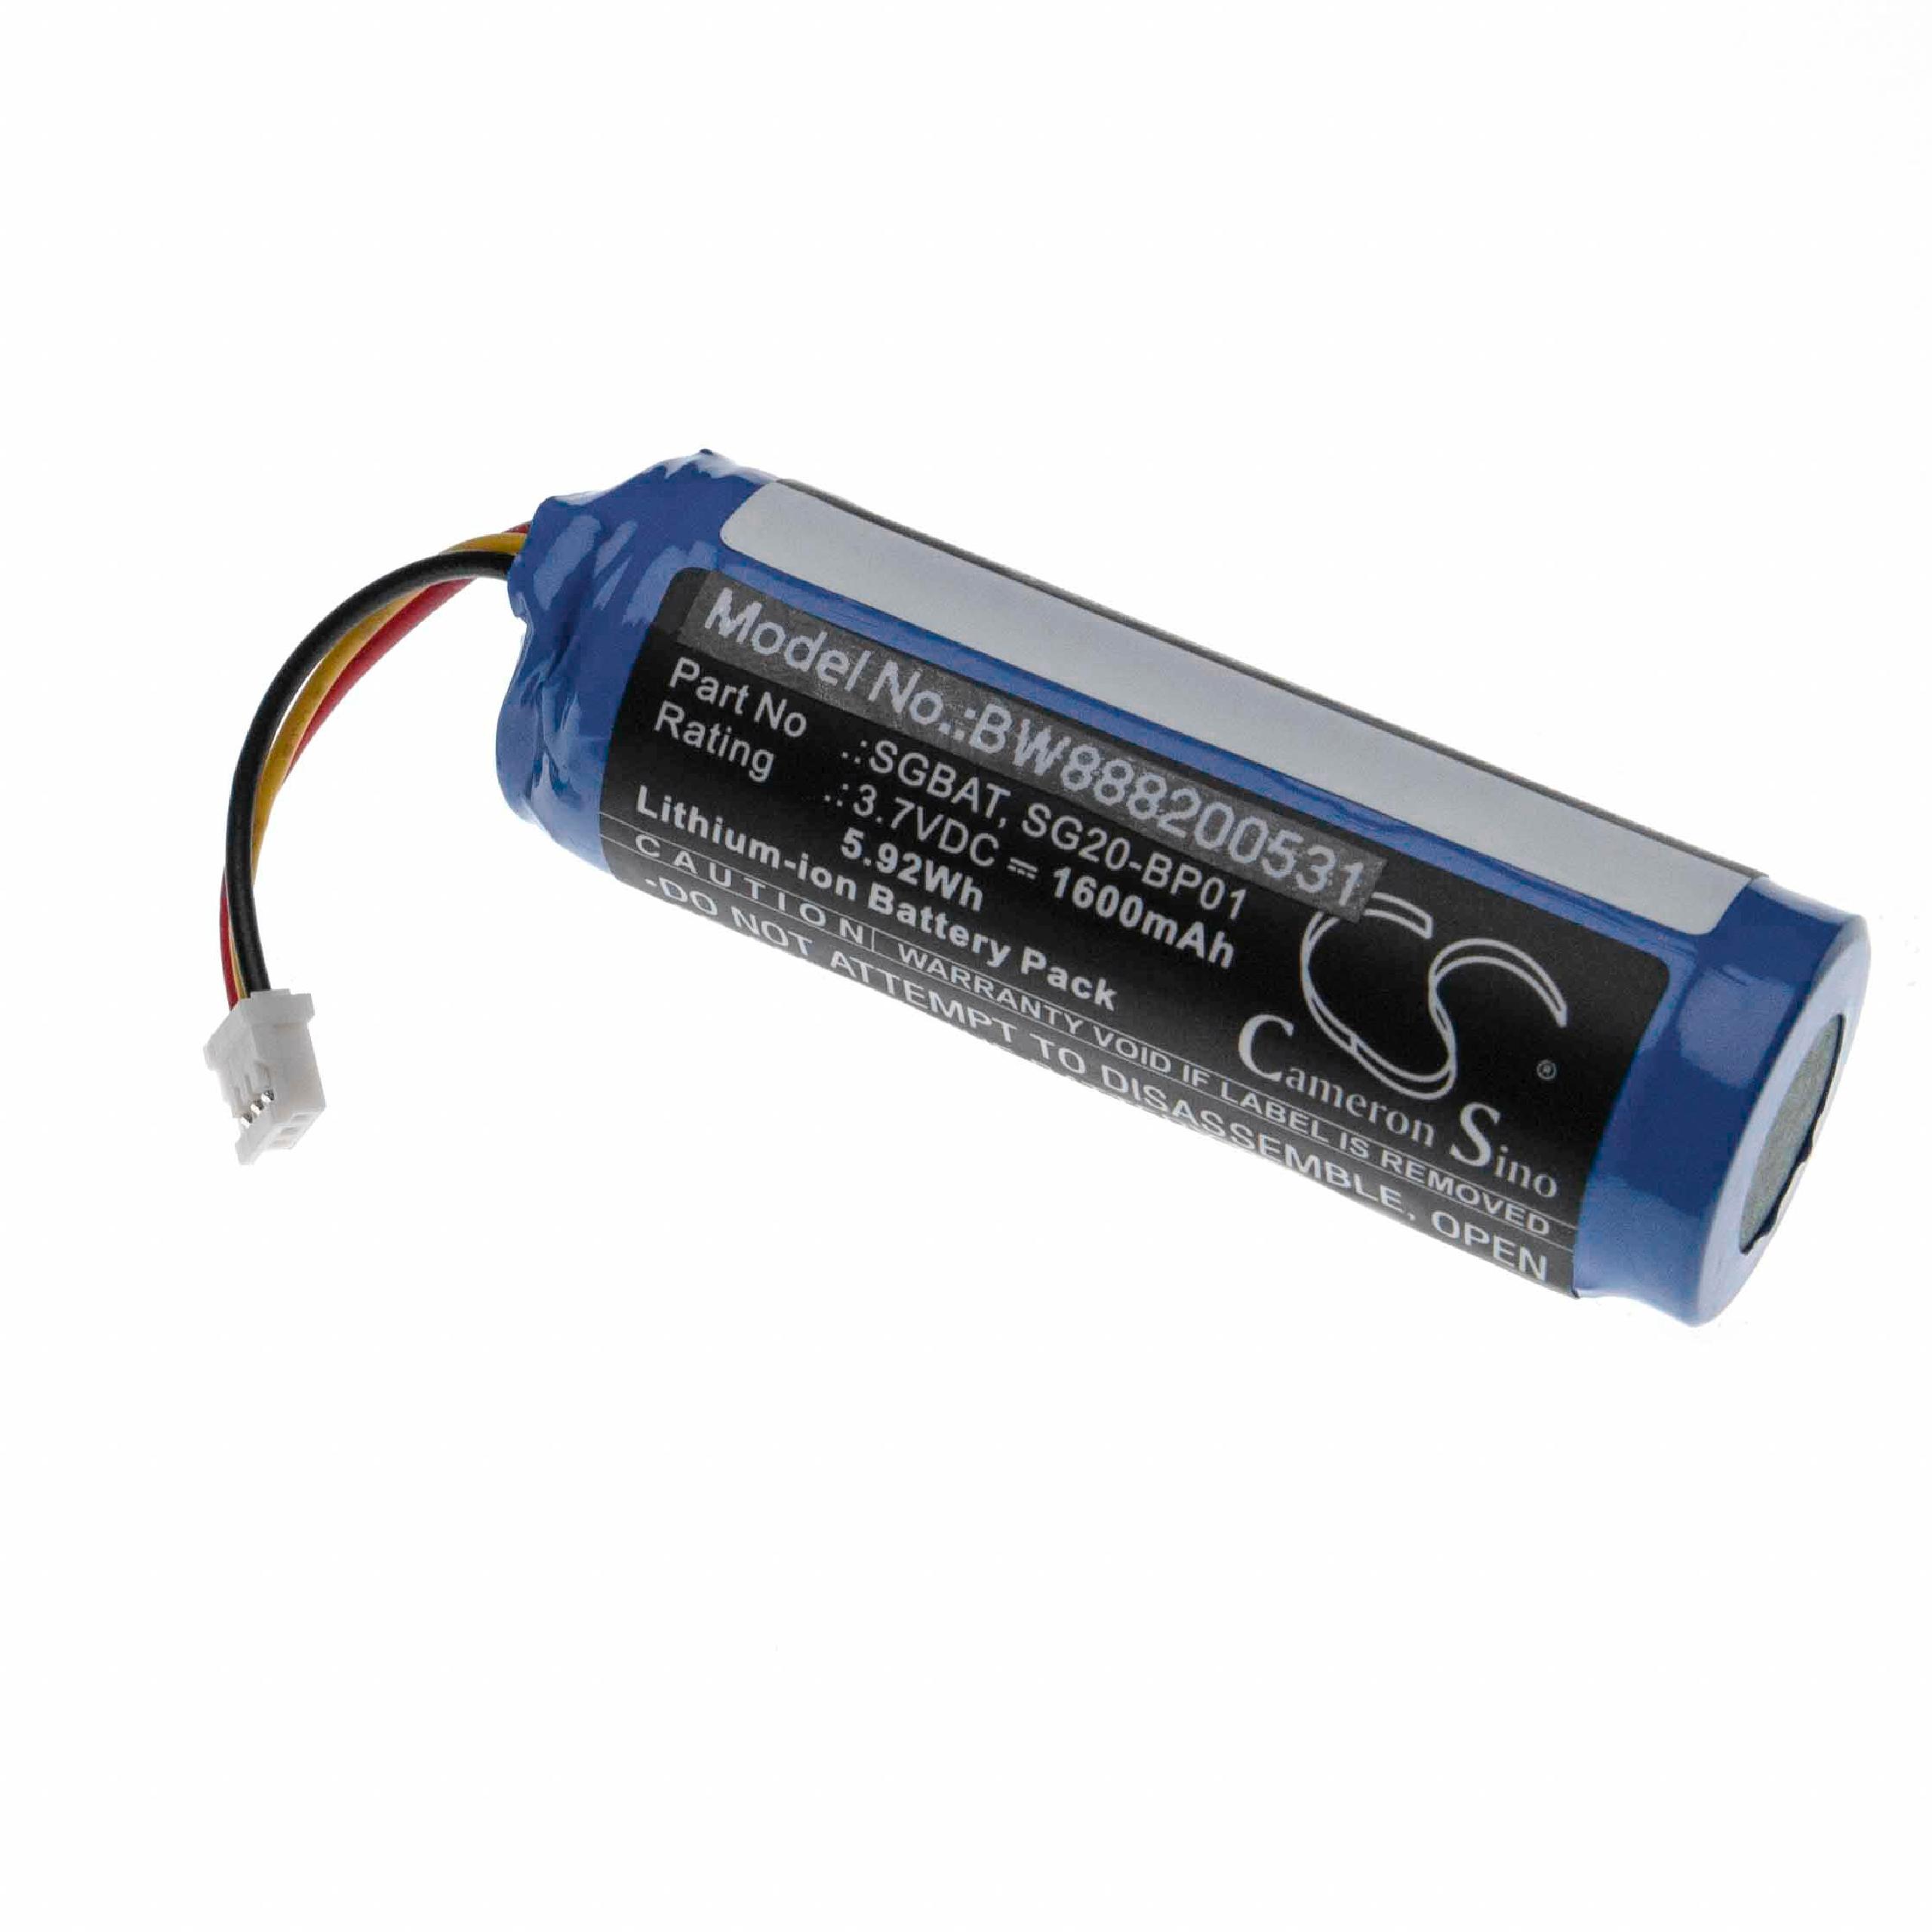 Batteria per lettore di codici a barre, POS sostituisce Intermec SG20-BP01 Intermec - 1600mAh 3,7V Li-Ion